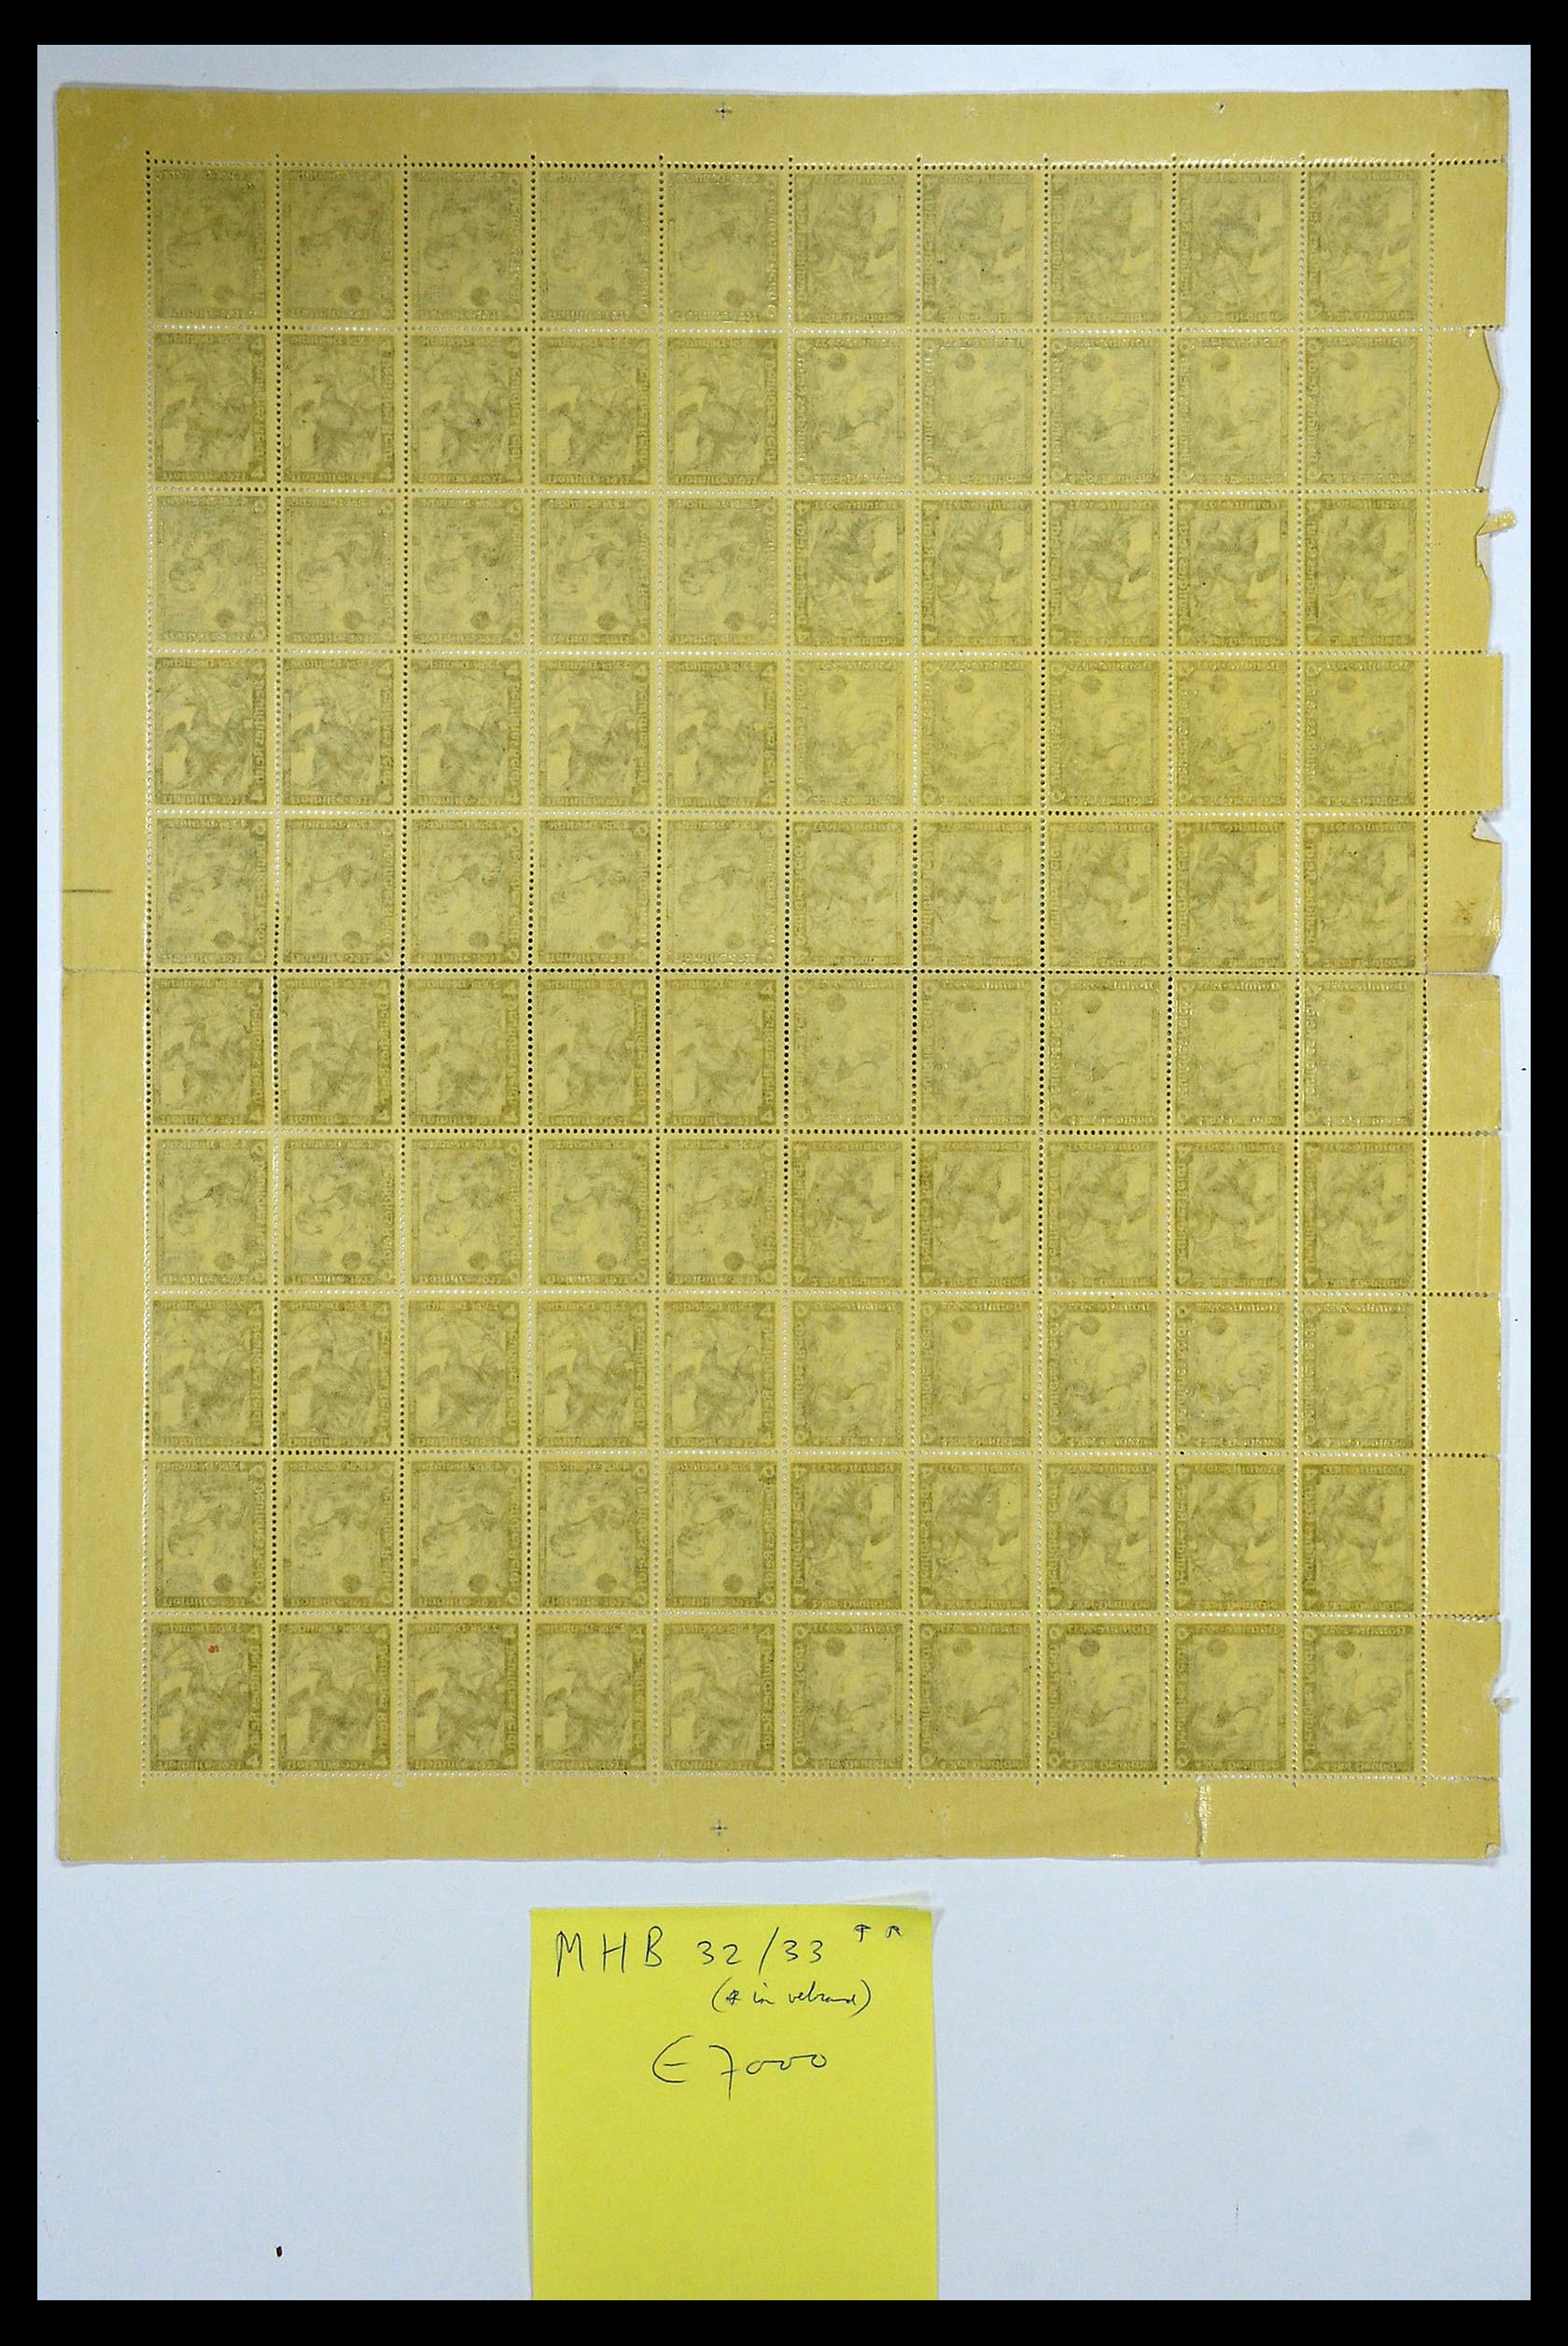 35075 006 - Stamp Collection 35075 German Reich Markenheftchenbogen 1933-1941.